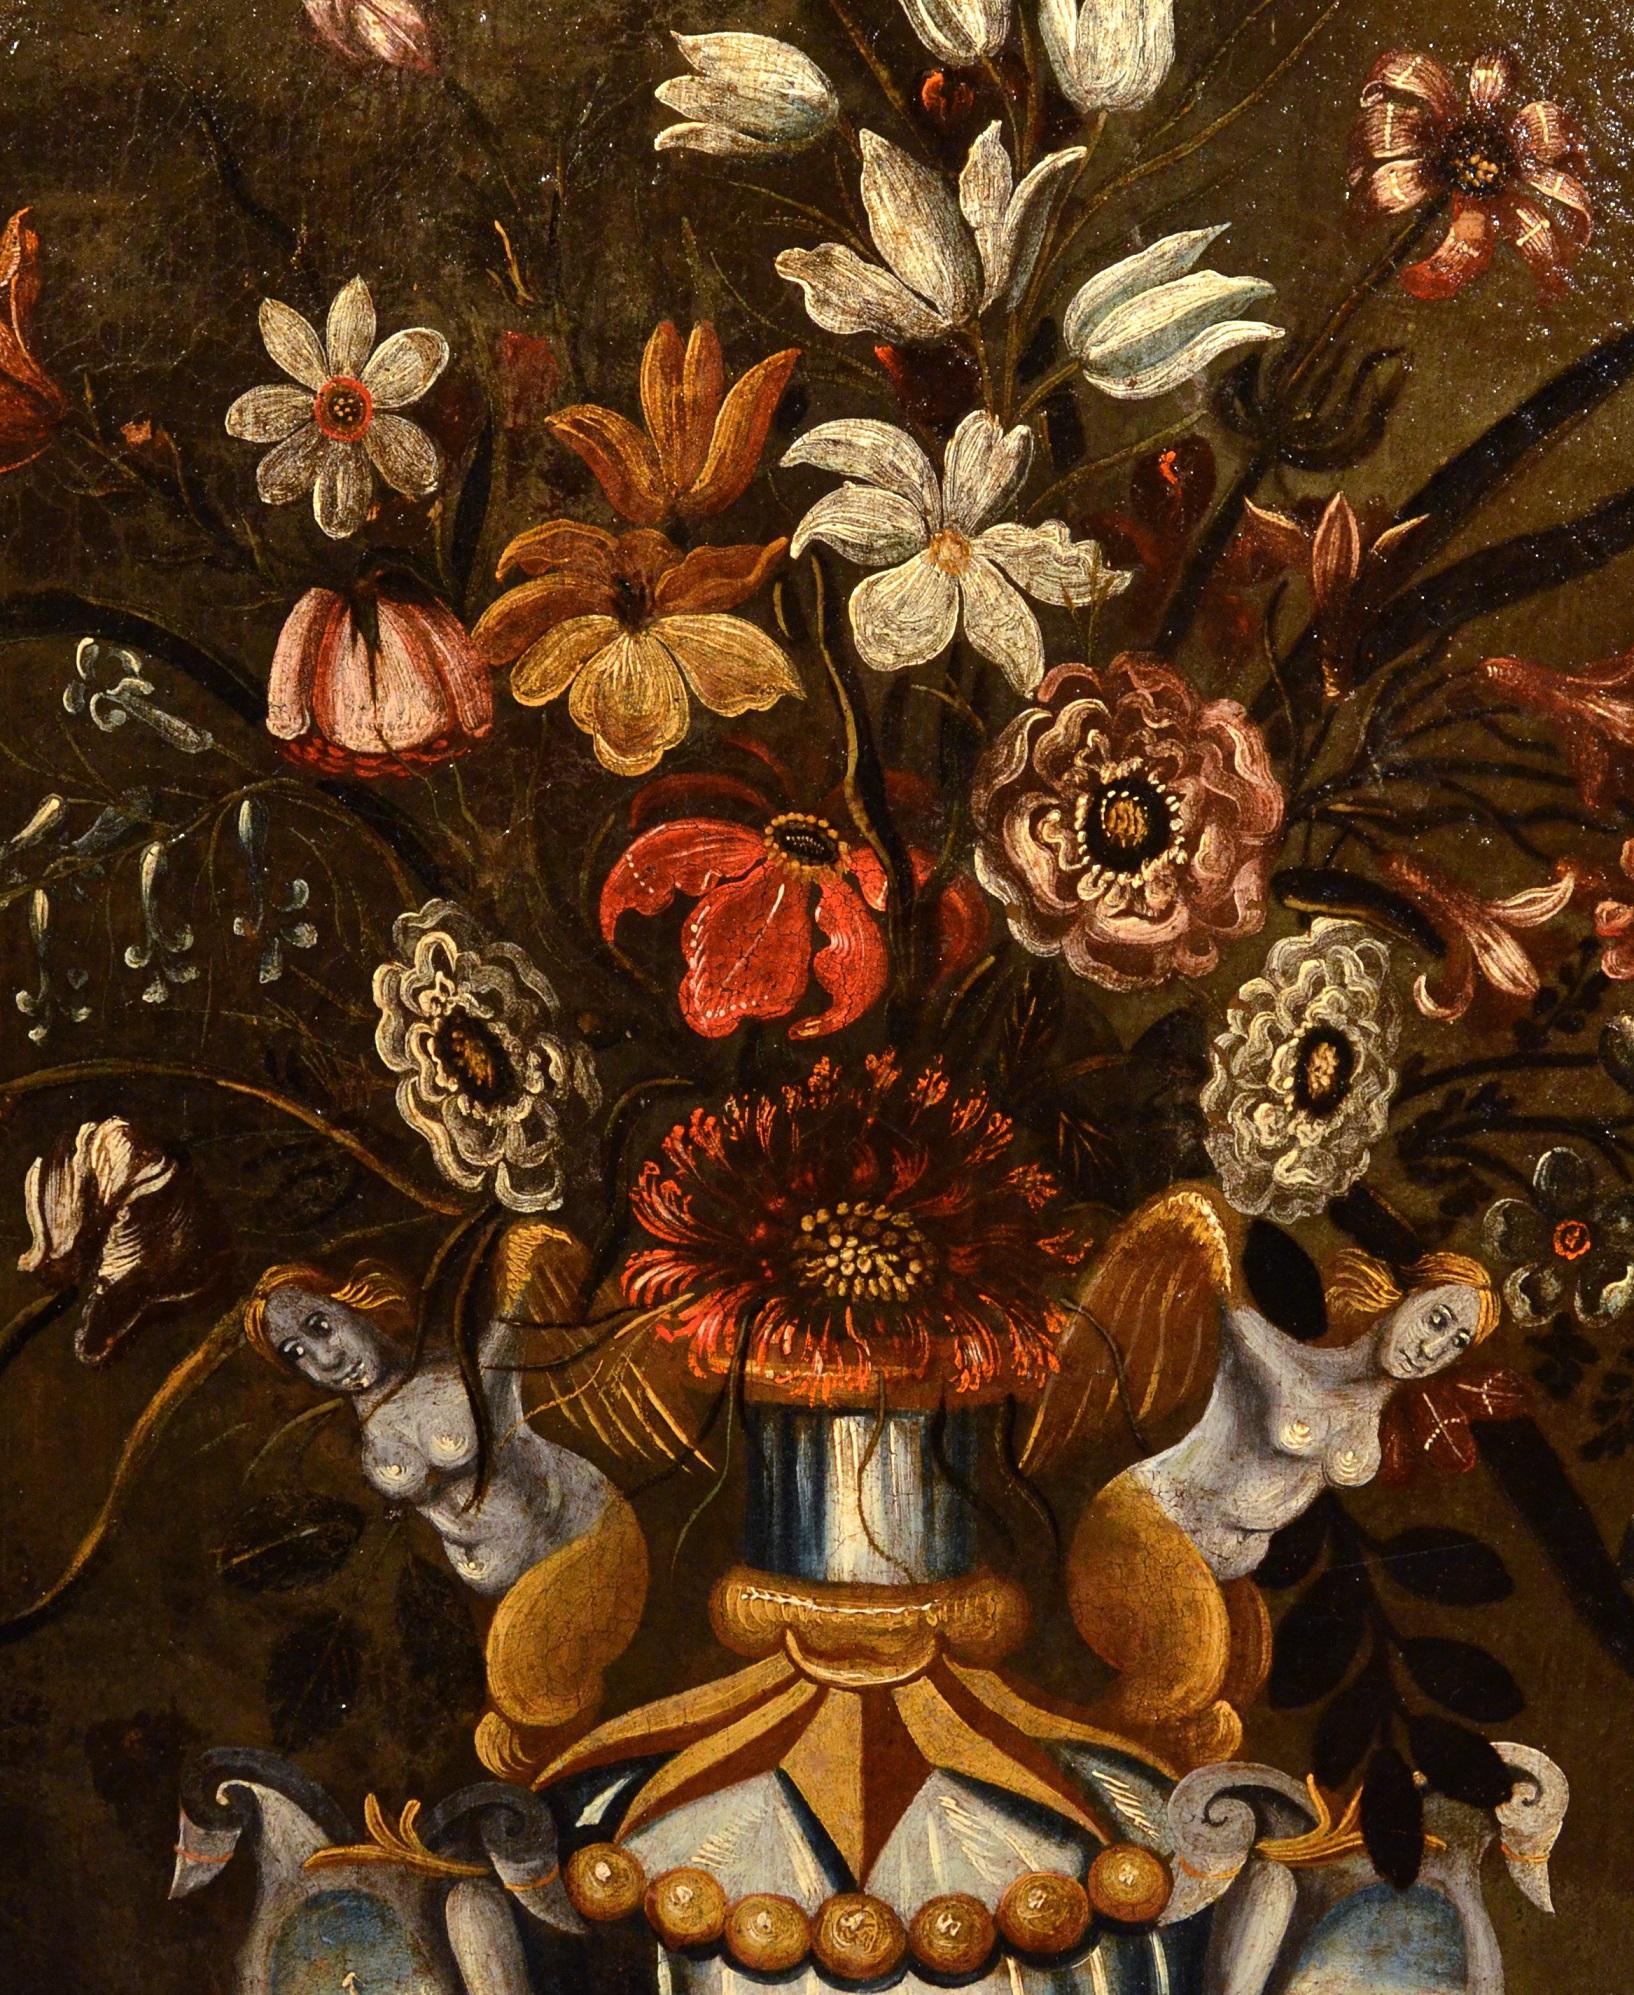 Maître du vase grotesque (actif à Rome et à Naples dans le premier quart du XVIIe siècle)
Nature morte de fleurs dans un vase classique

huile sur toile
66 x 51 cm, dans le cadre cm. 82 x 68

Dans cette somptueuse nature morte, on voit un précieux